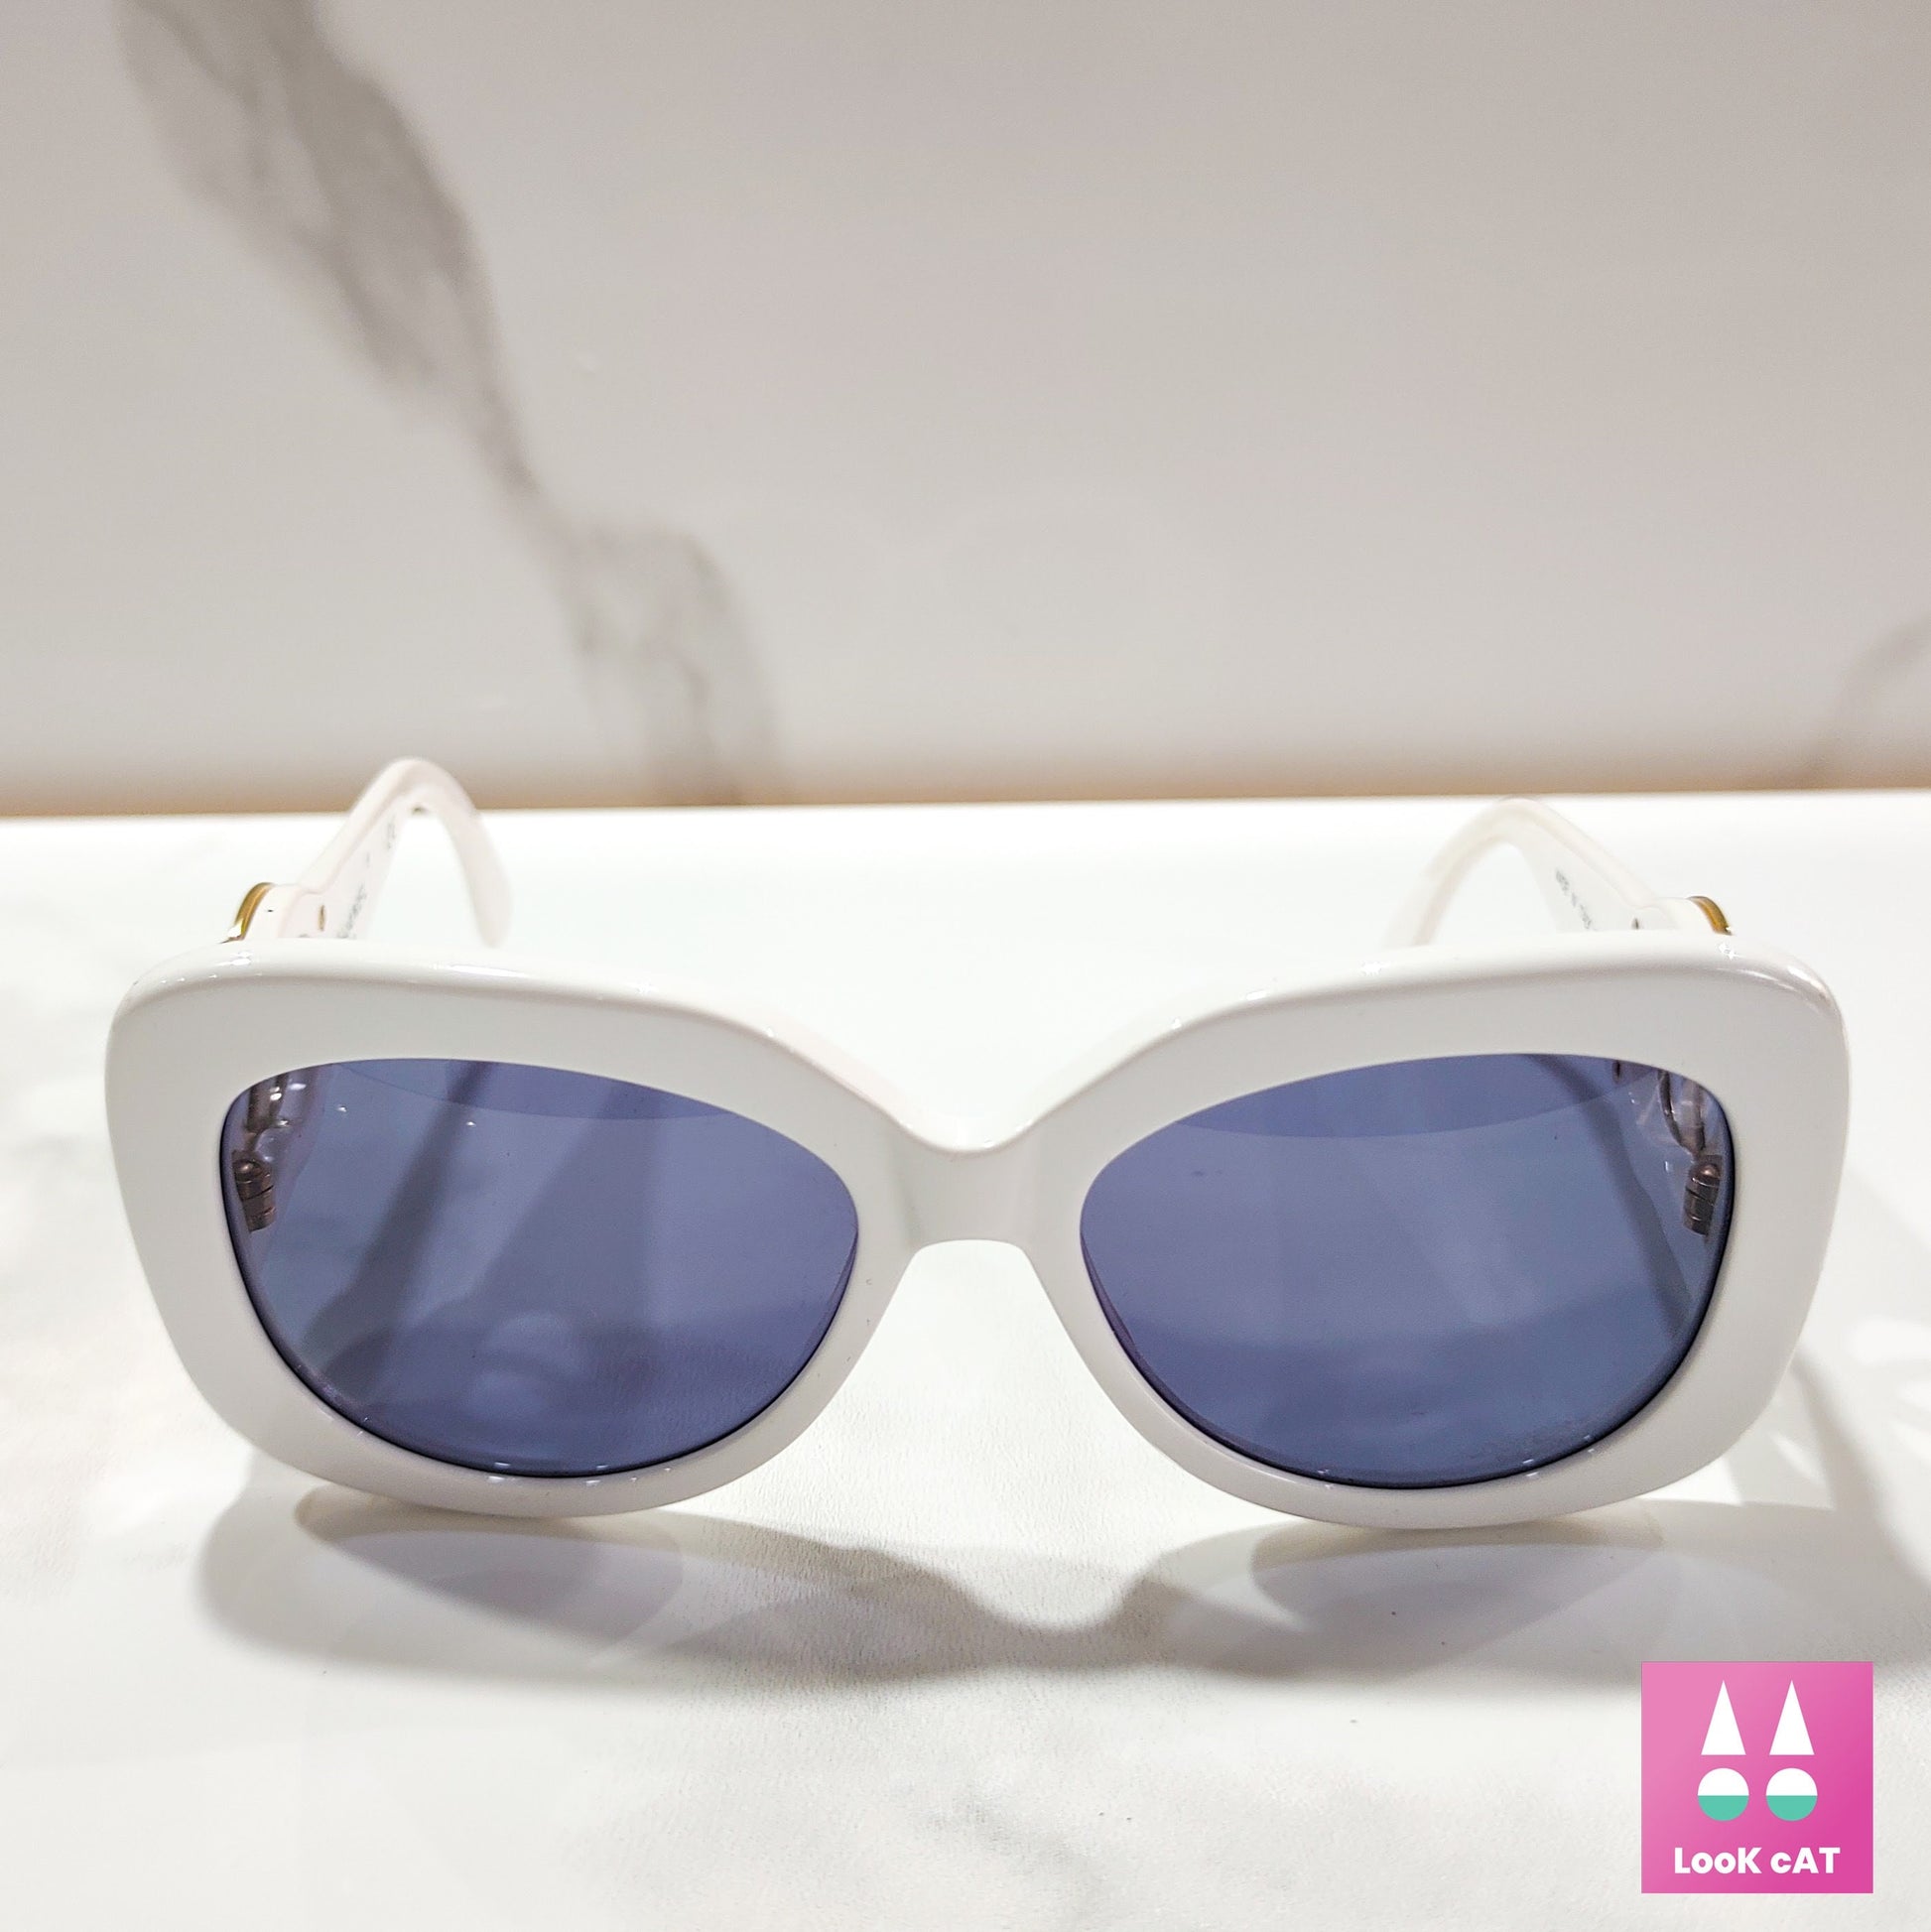 Chanel model 05253 rare lunette brille sunglasses from the 90s, big C –  LookcatSunglasses